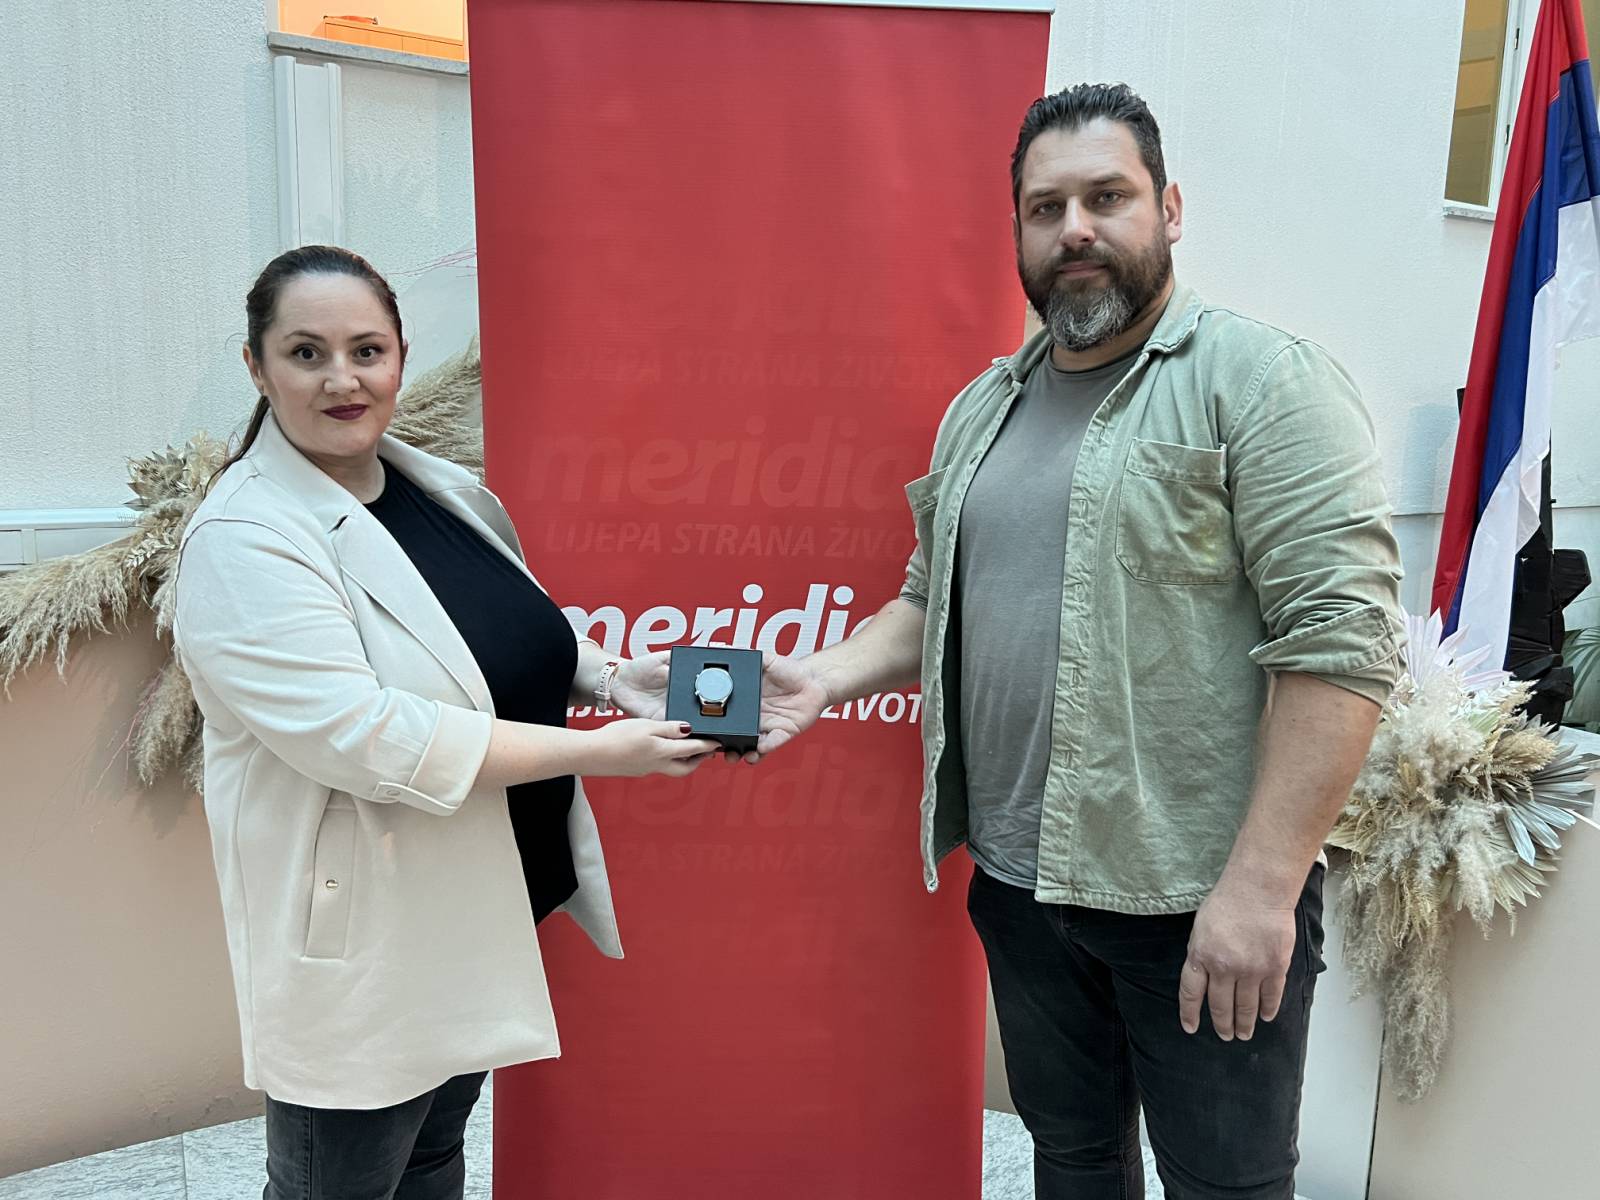 Kompanija Meridian nagradila Gorana Radonića za najbolju fotografiju (FOTO)